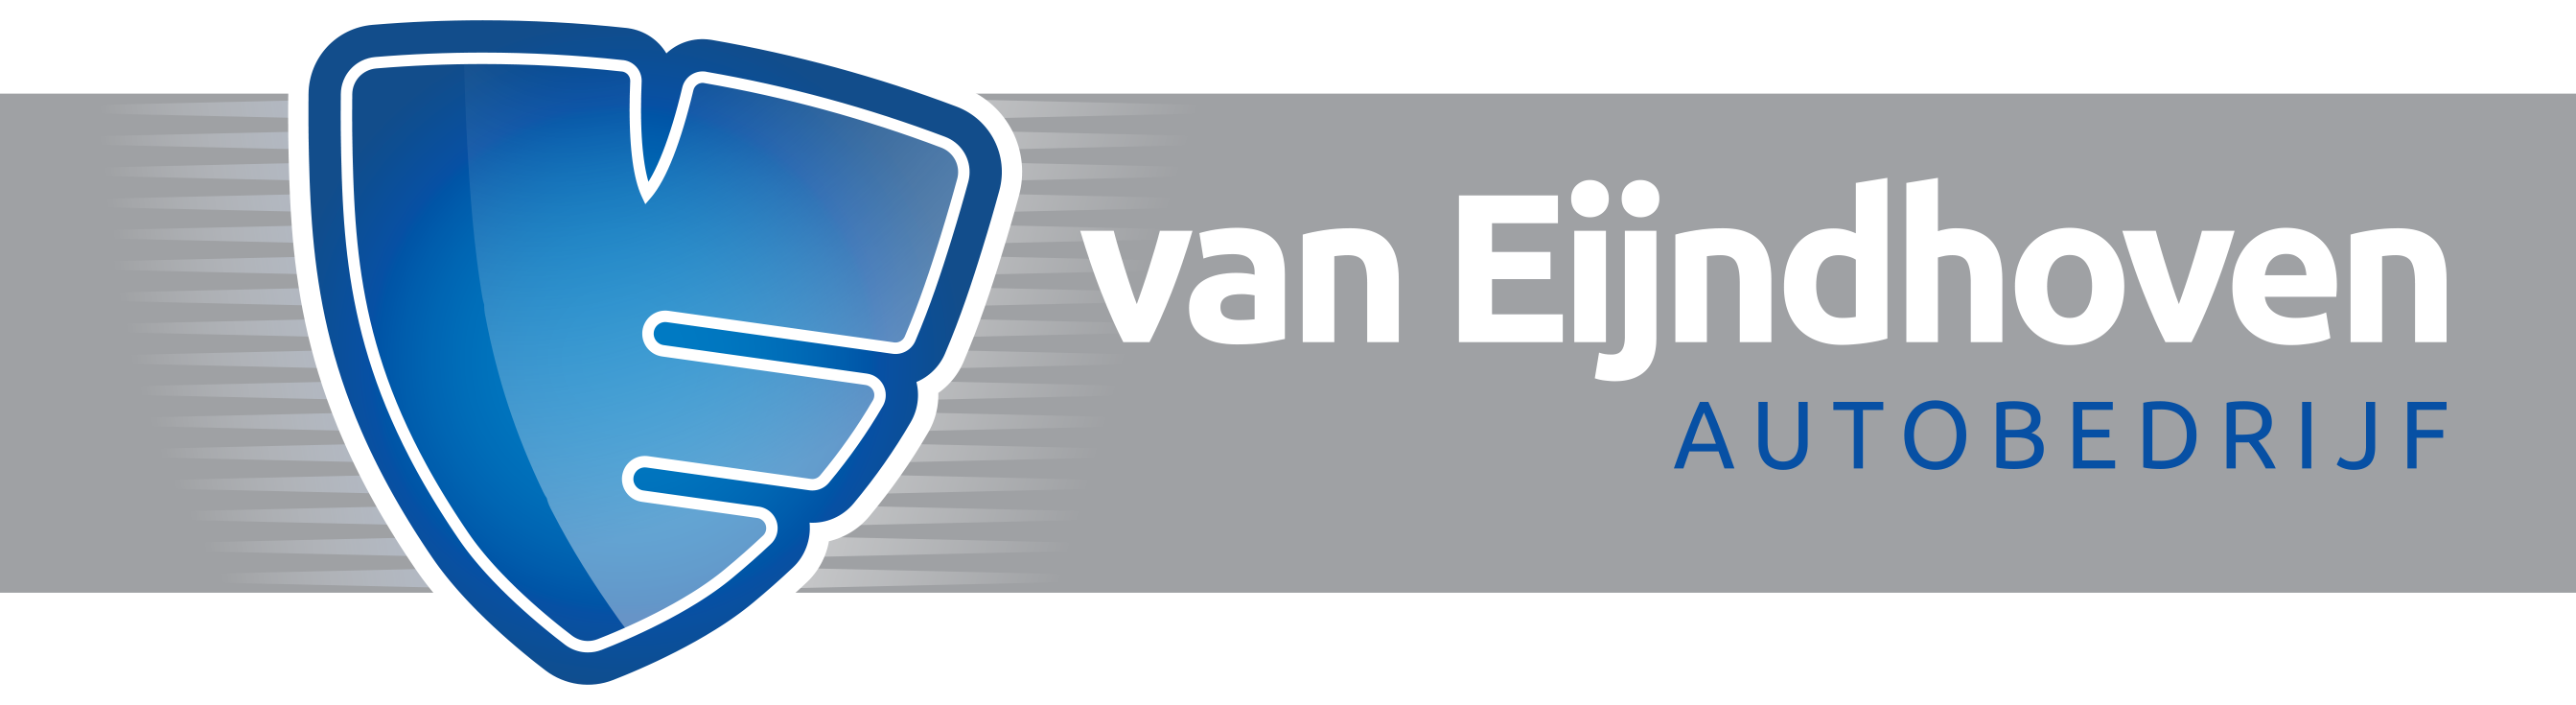 Autobedrijf van Eijndhoven logo